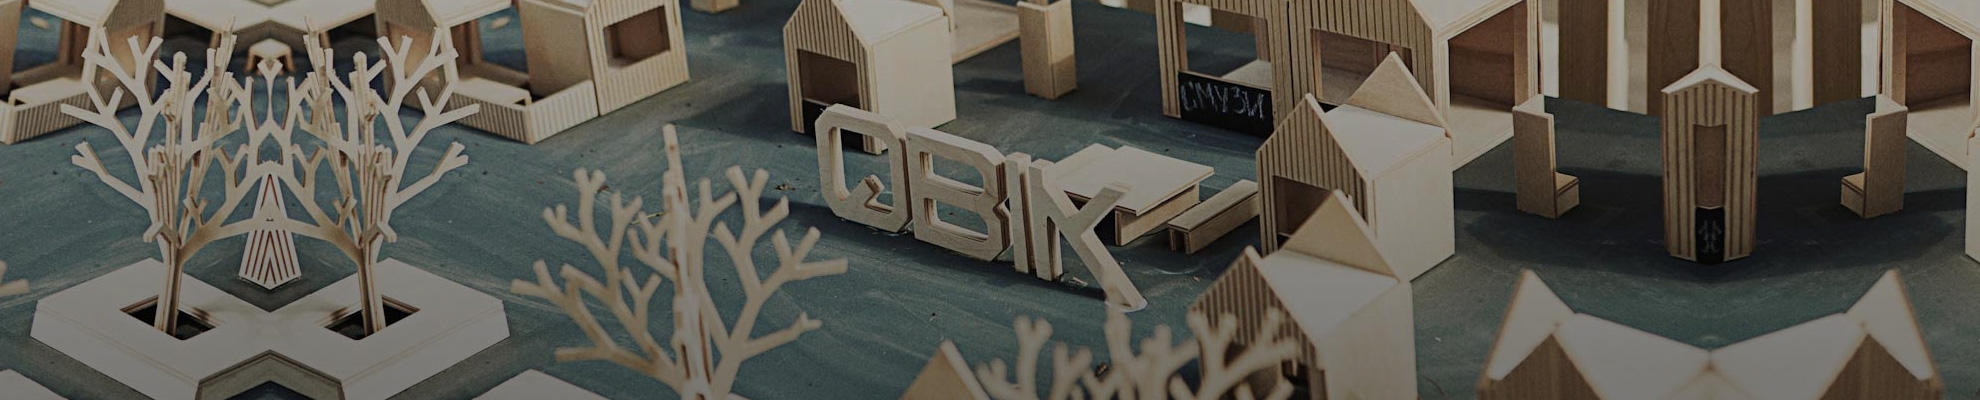 Деревянные конструкции QBIK, или Умное решение для фестивалей